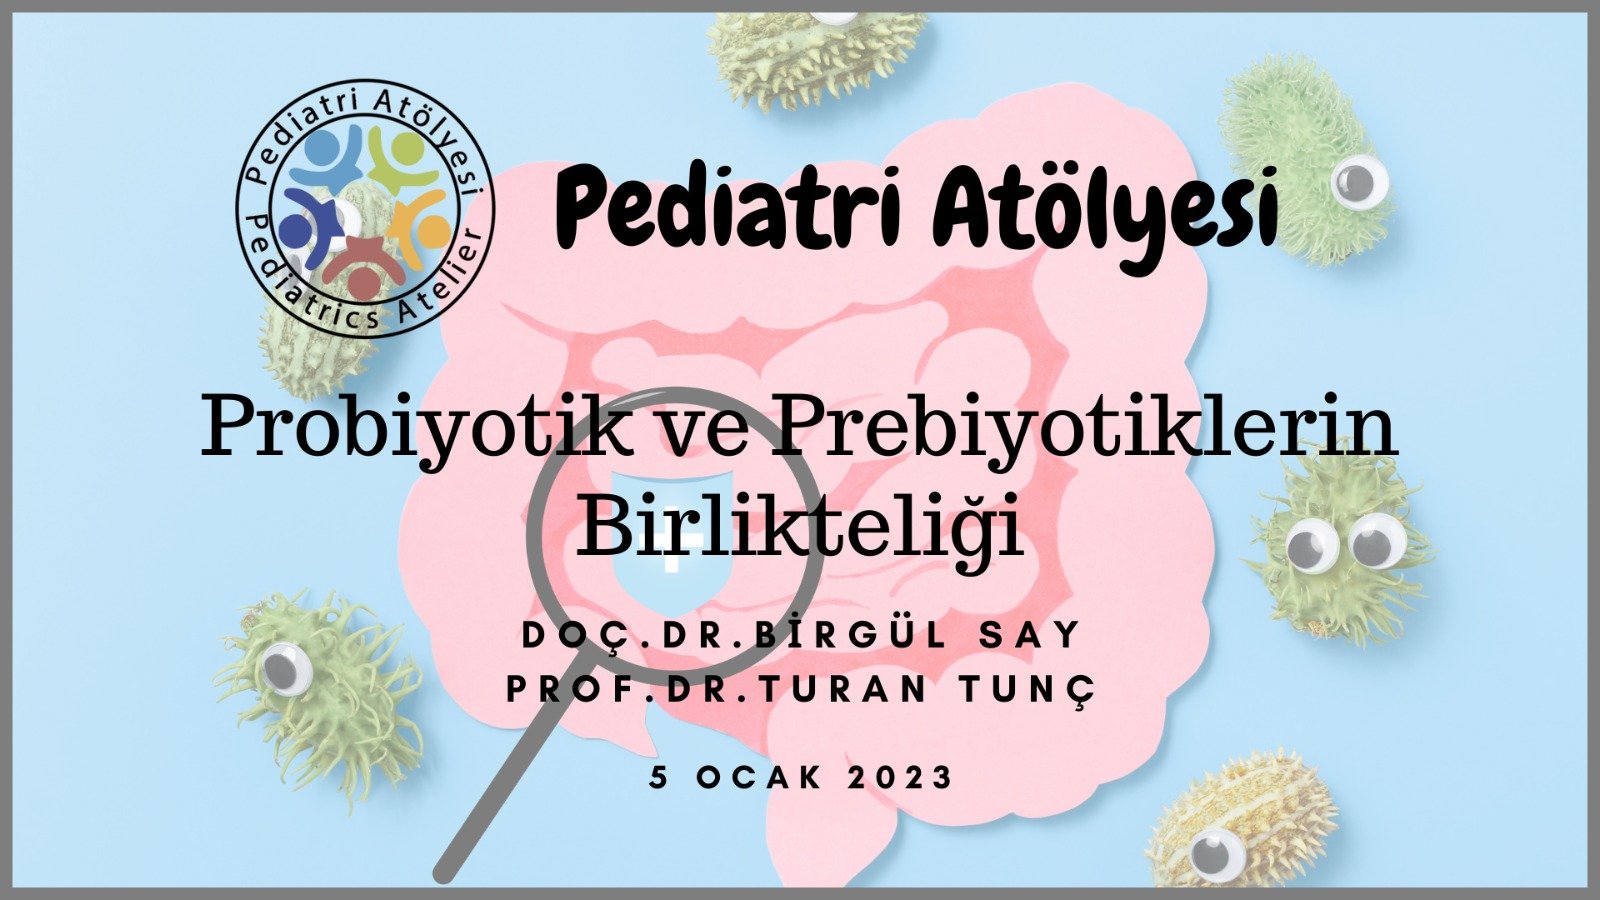 Probiyotik ve Prebiyotiklerin Birlikteliği